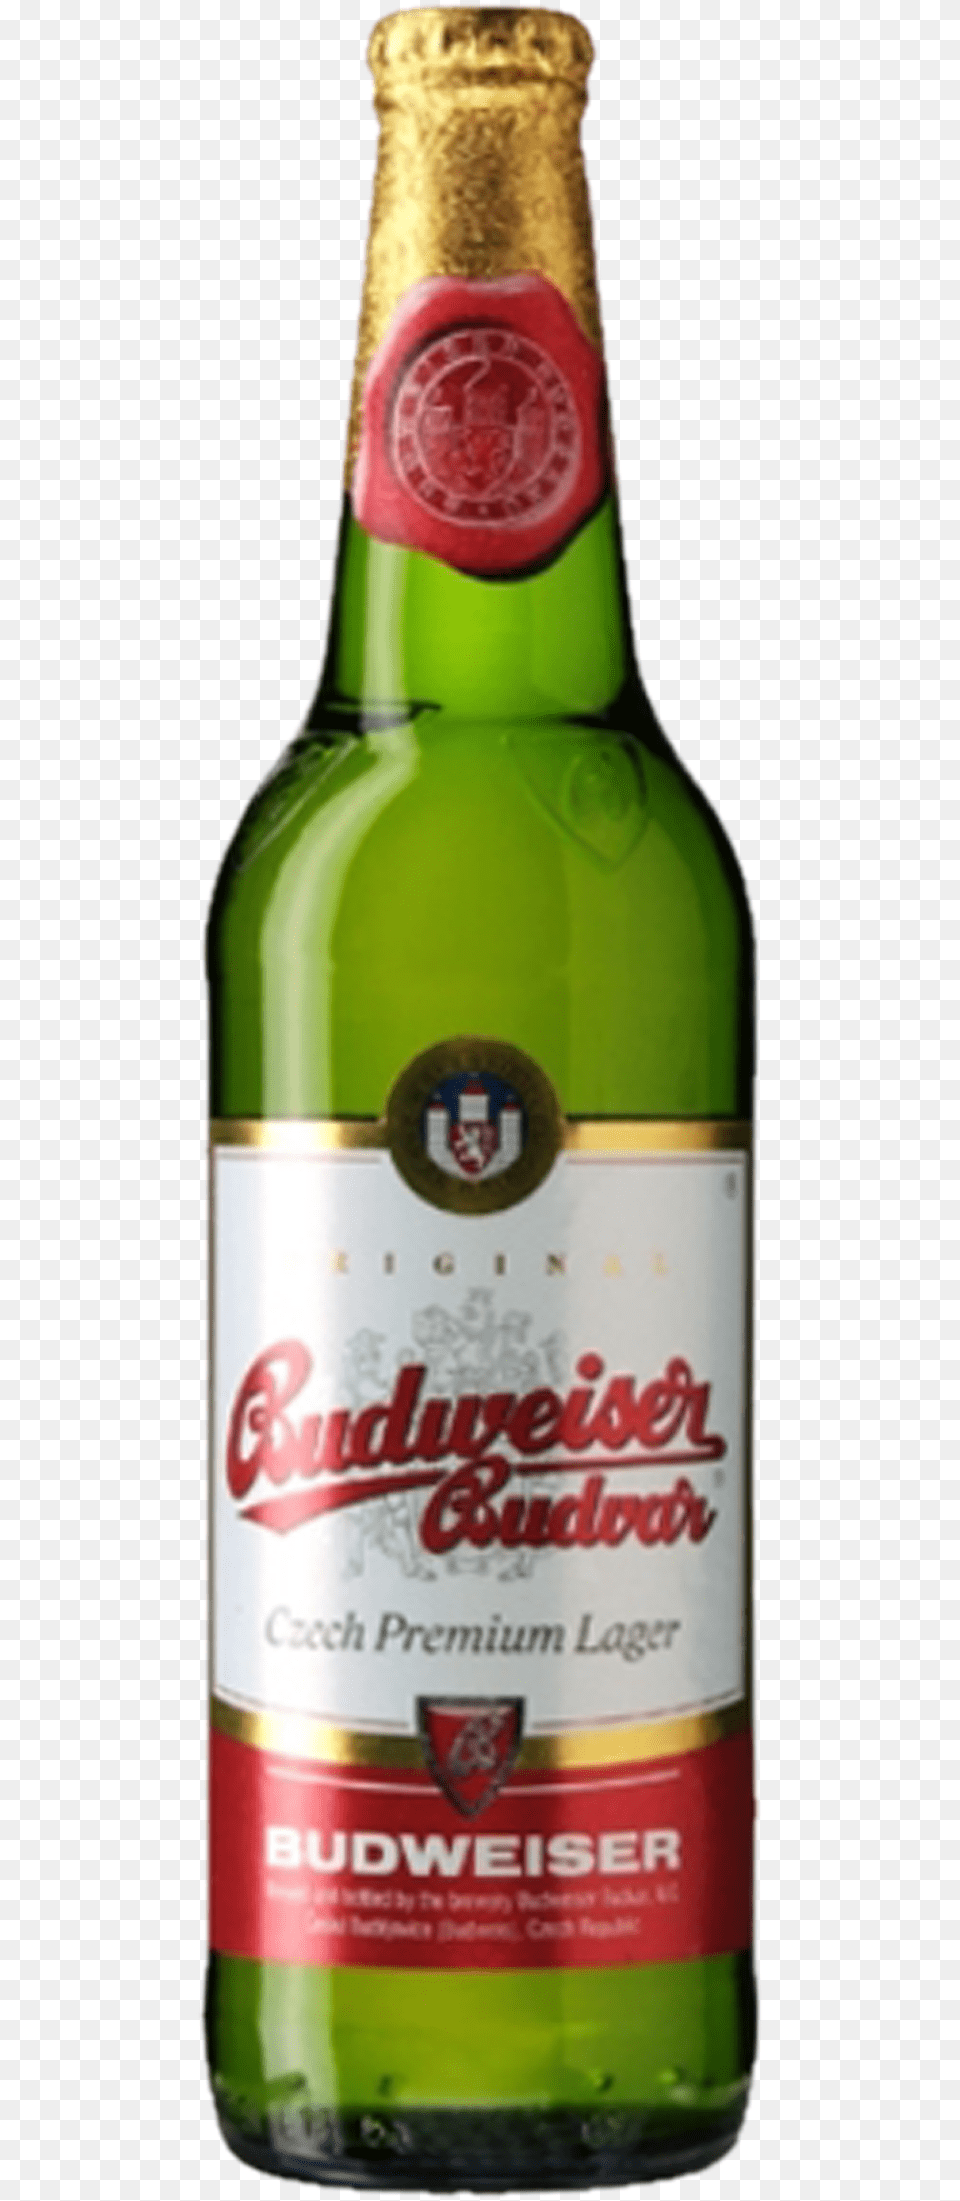 Budweiser Bottle Budweiser Budvar, Alcohol, Beer, Beer Bottle, Beverage Free Transparent Png